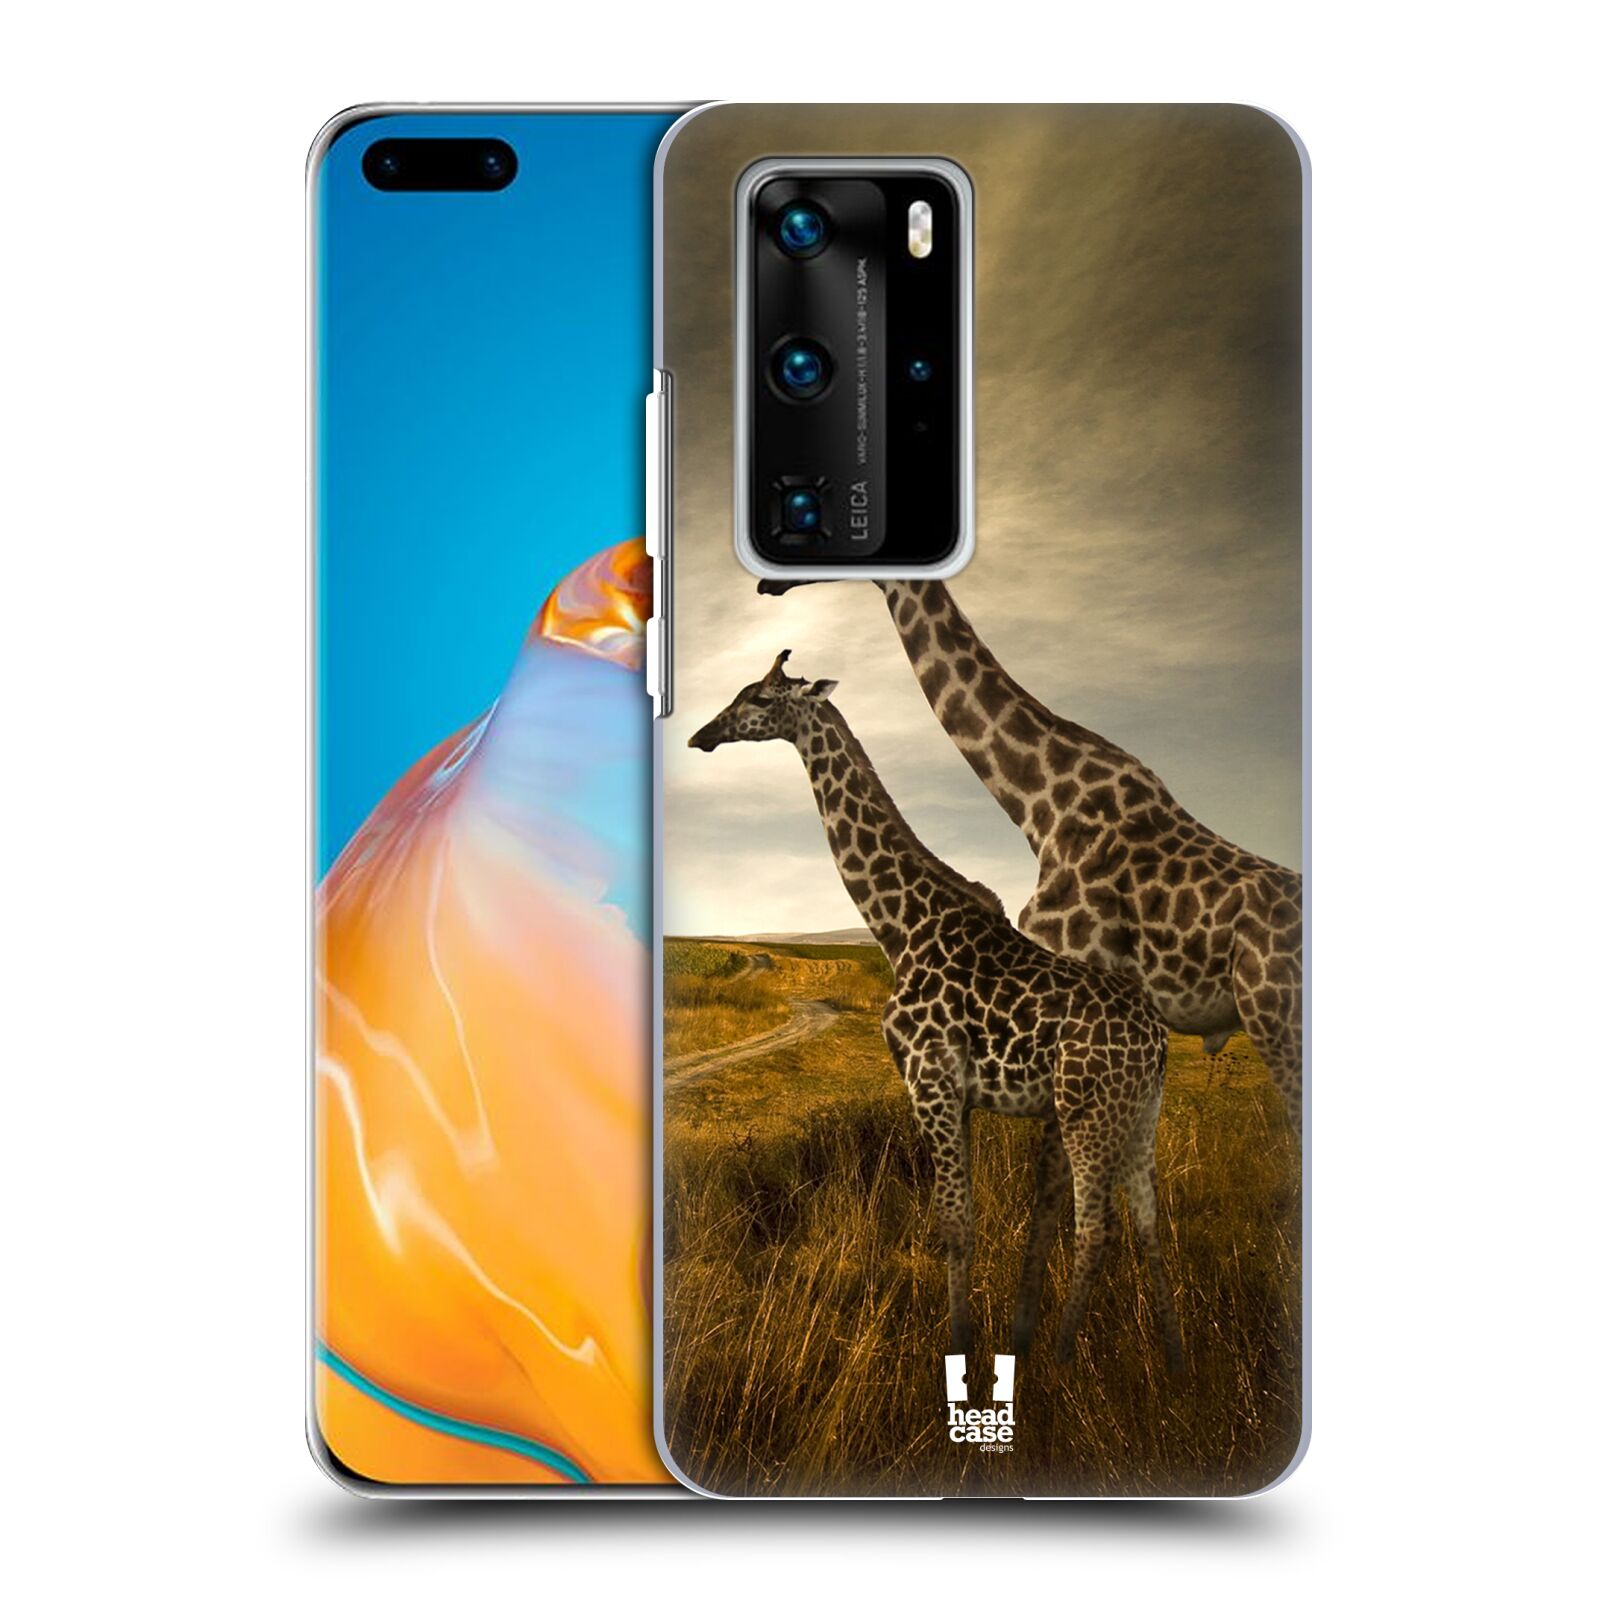 Zadní obal pro mobil Huawei P40 PRO / P40 PRO PLUS - HEAD CASE - Svět zvířat žirafy